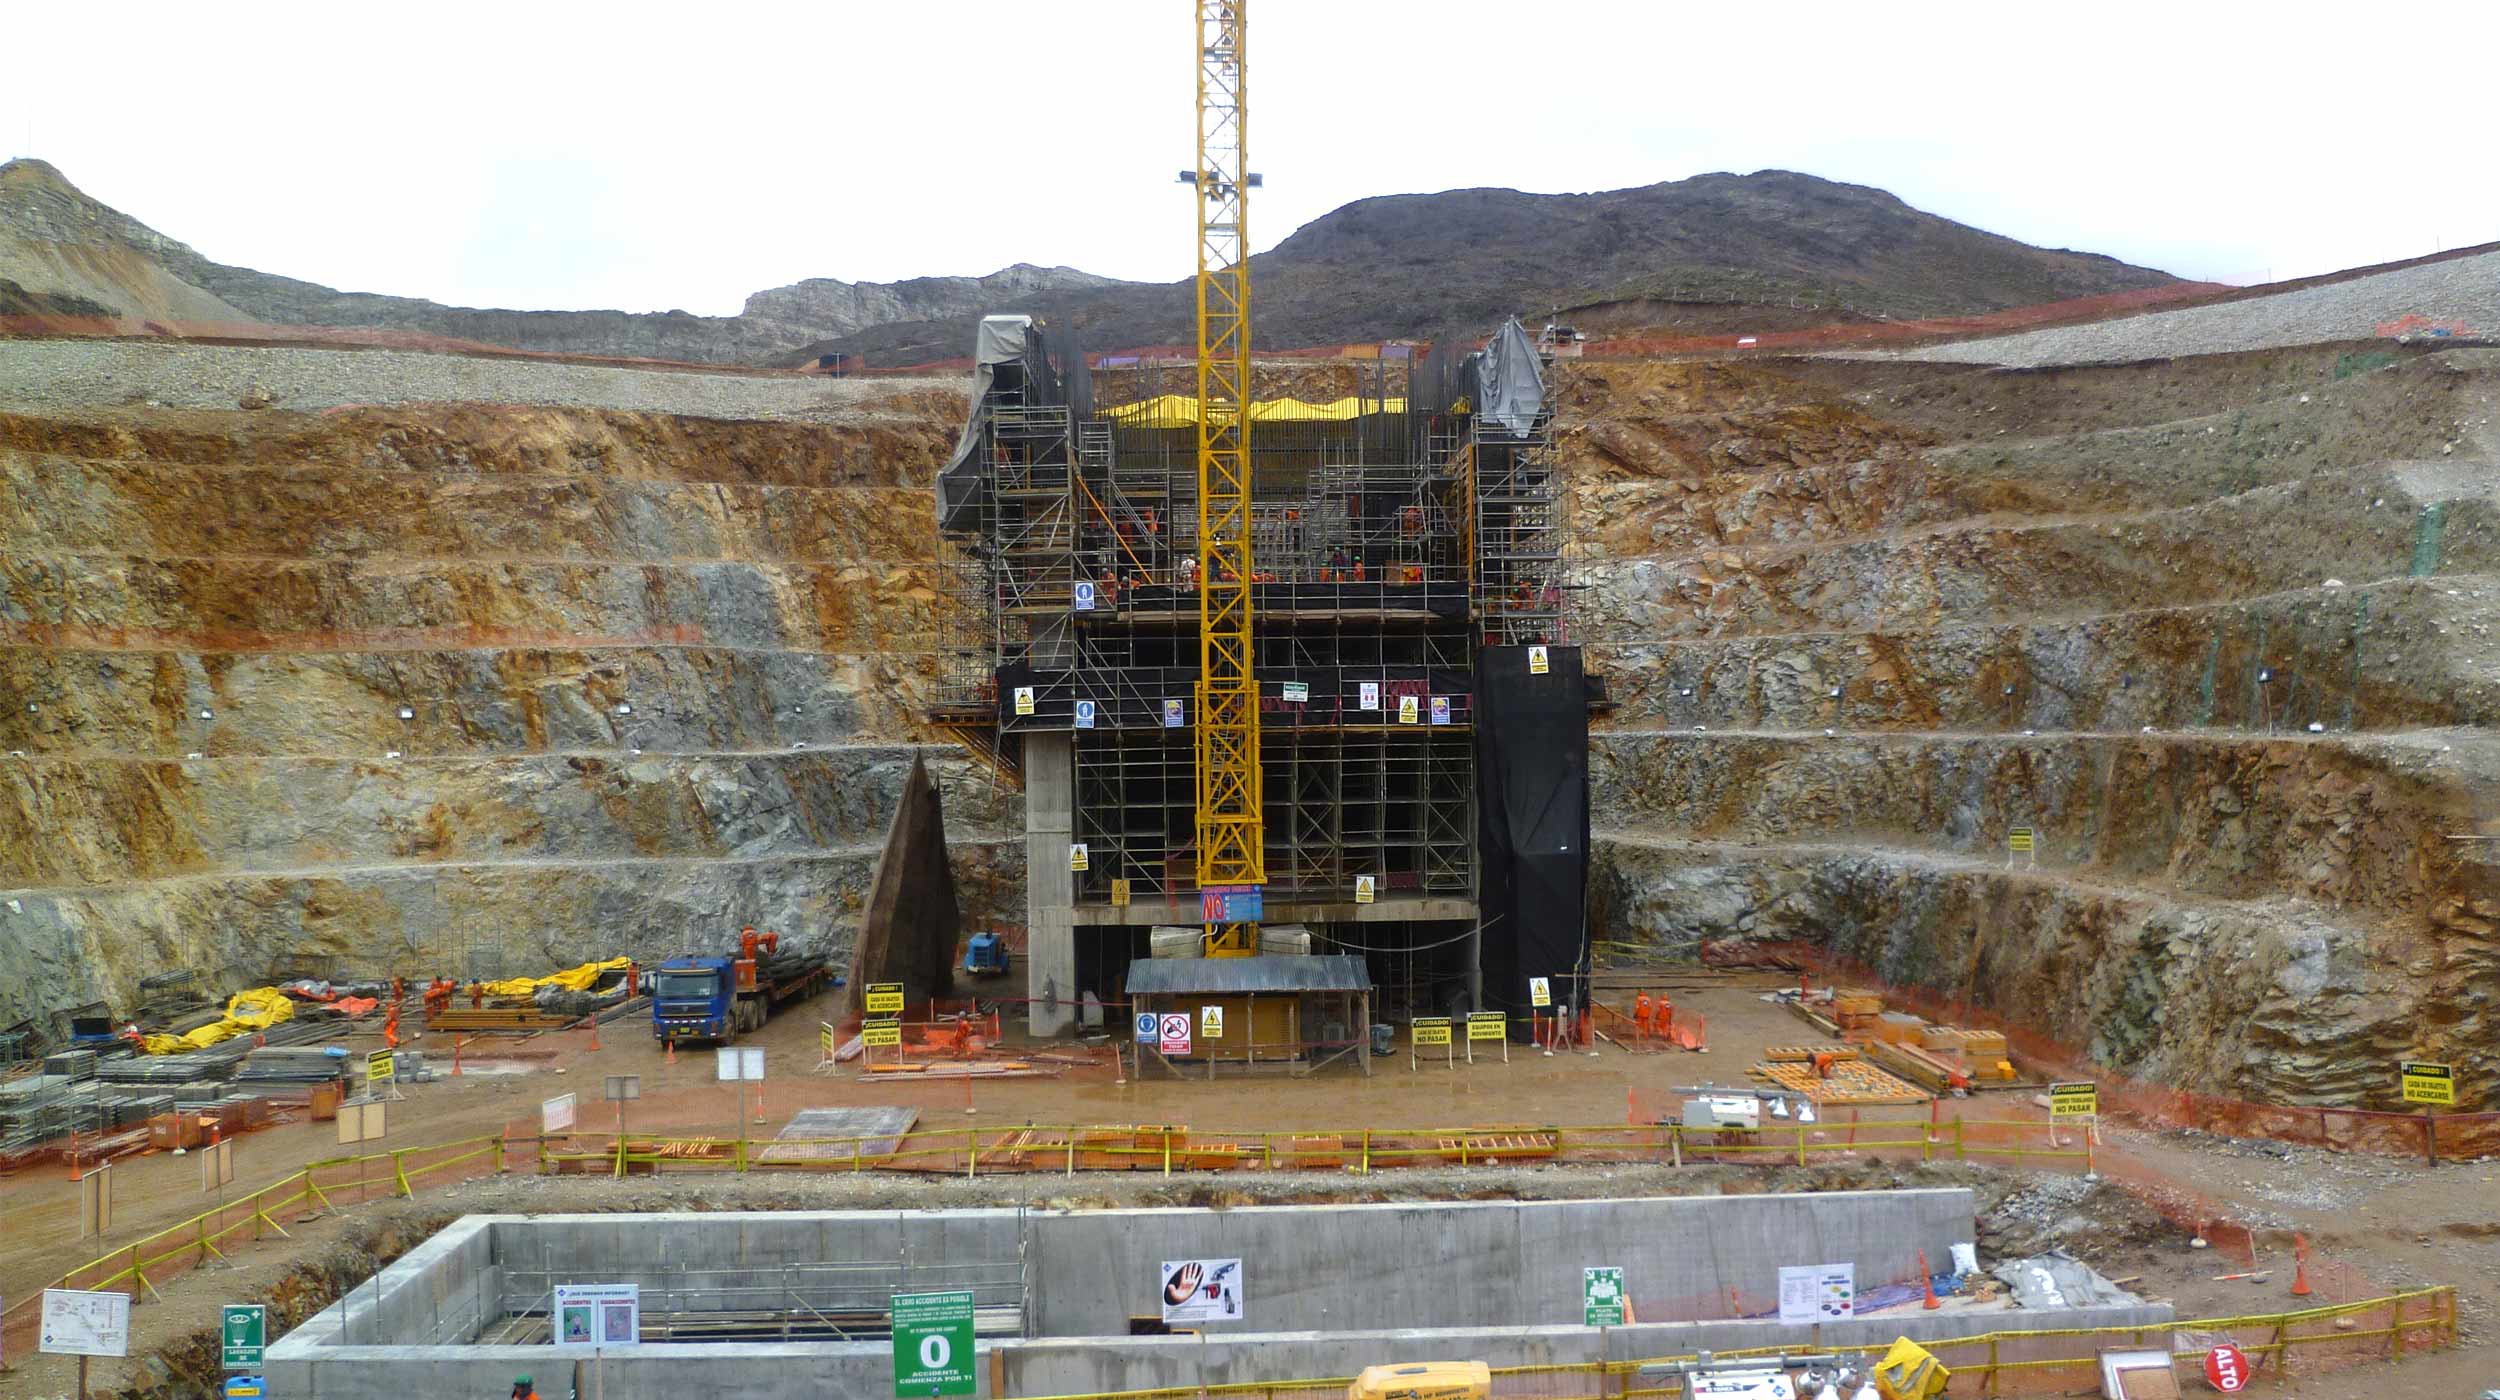 Velkokapacitní projekty, jako je tento povrchový důl, zahrnují celou řadu unikátních konstrukcí a vyžadují individuální řešení. Uplatní se zde produkty, které se dokážou přizpůsobit specifickým požadavkům projektu.